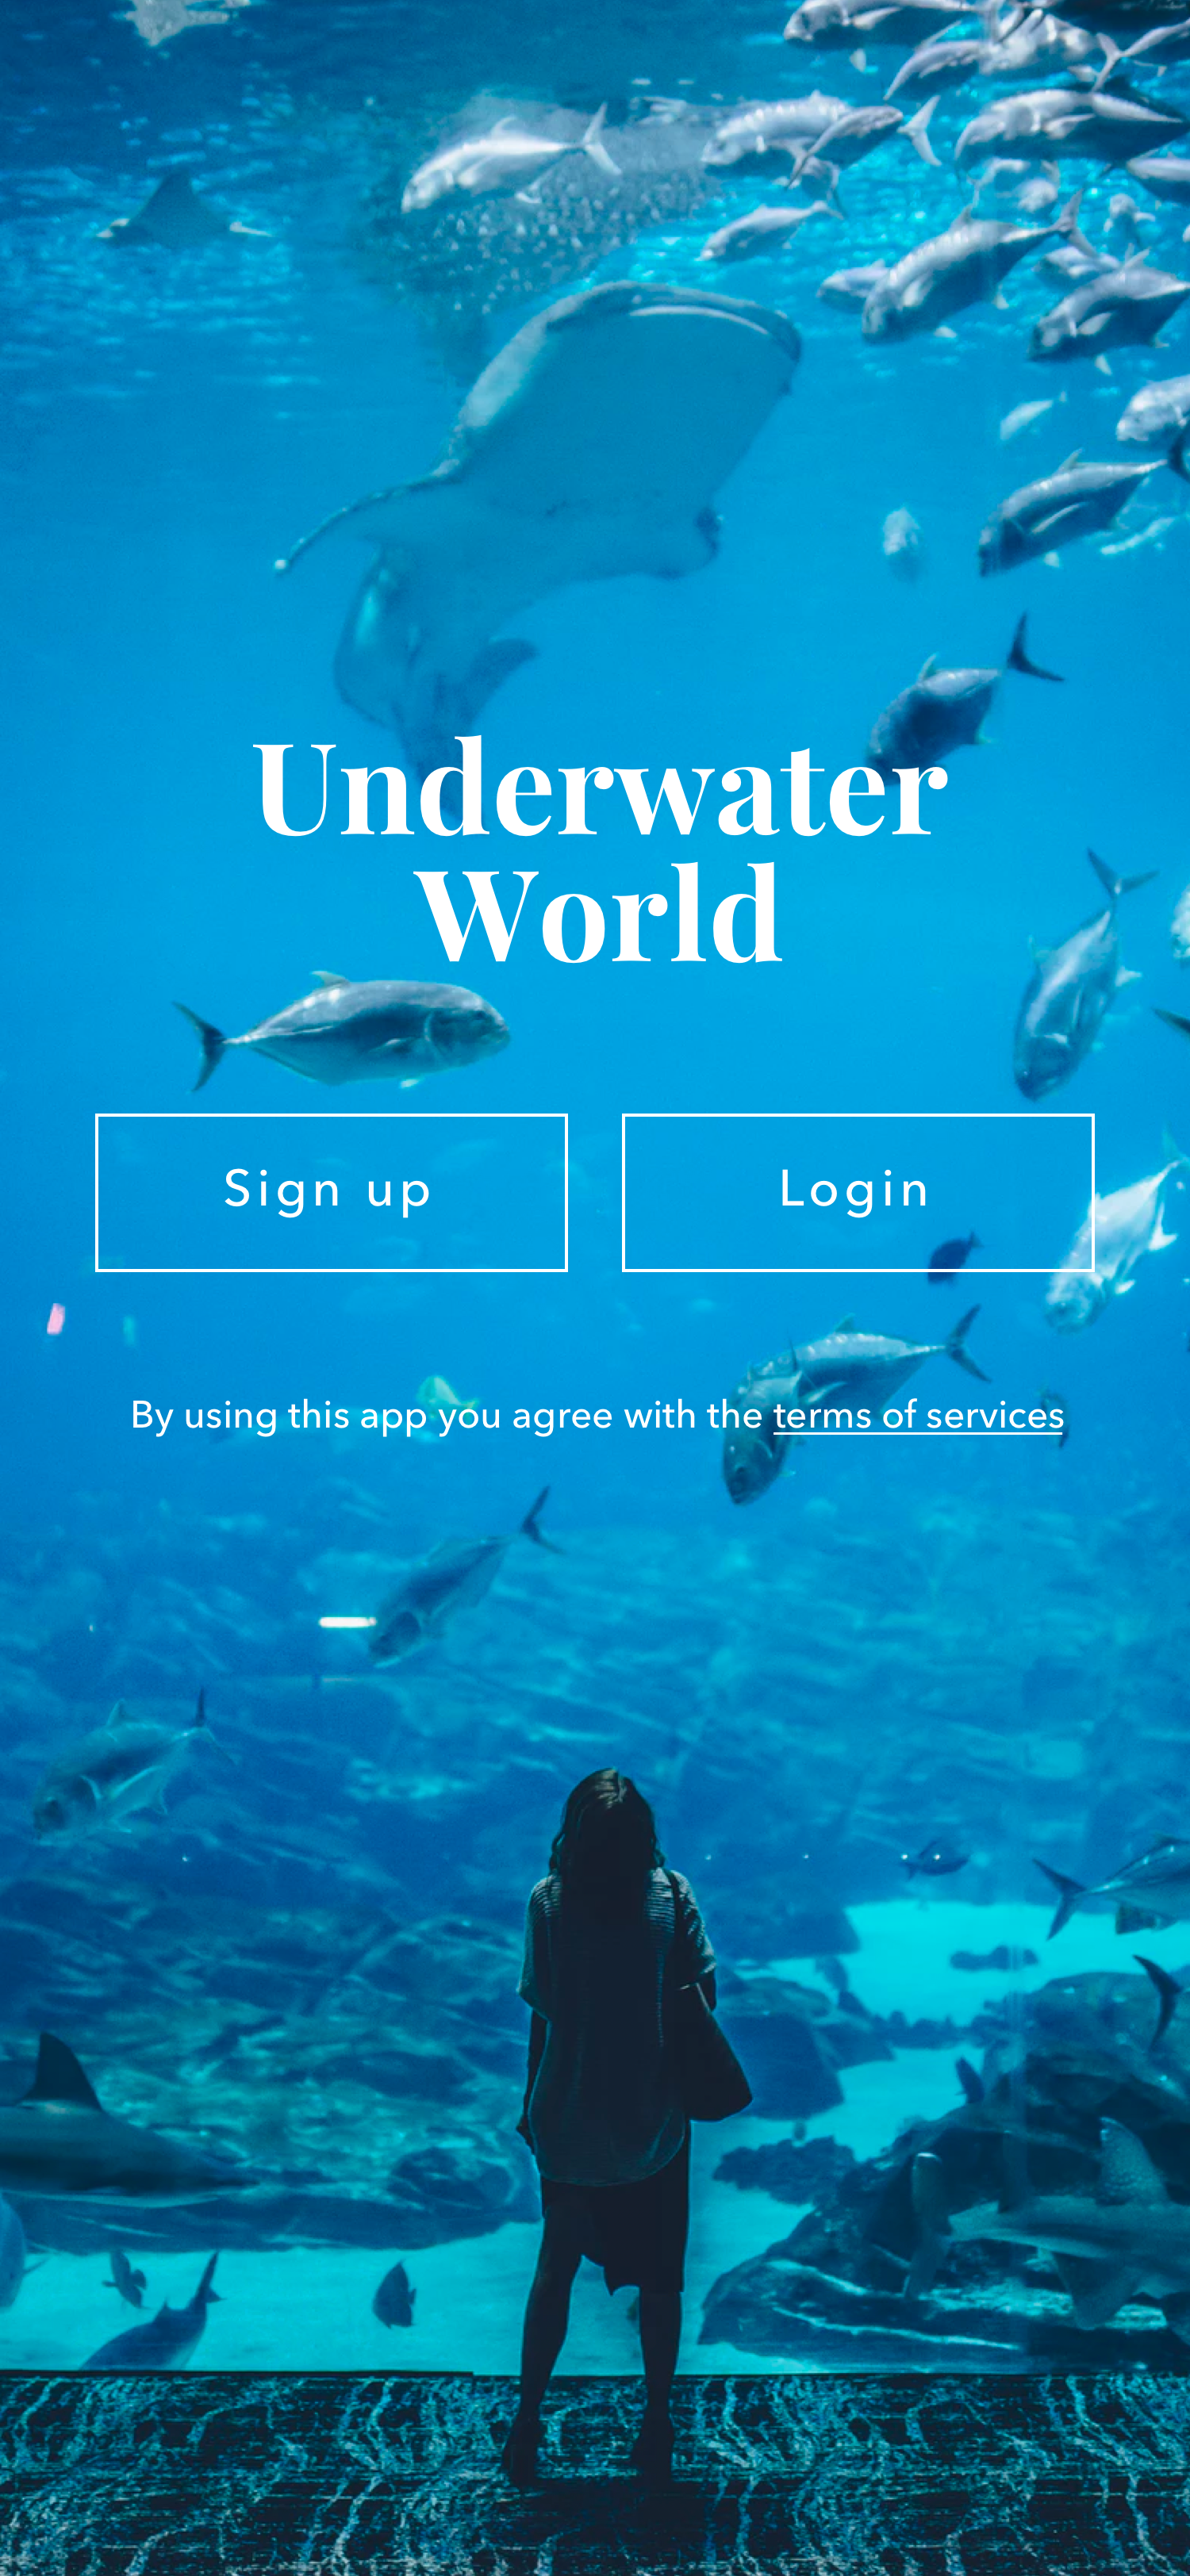 Underwater World main screen